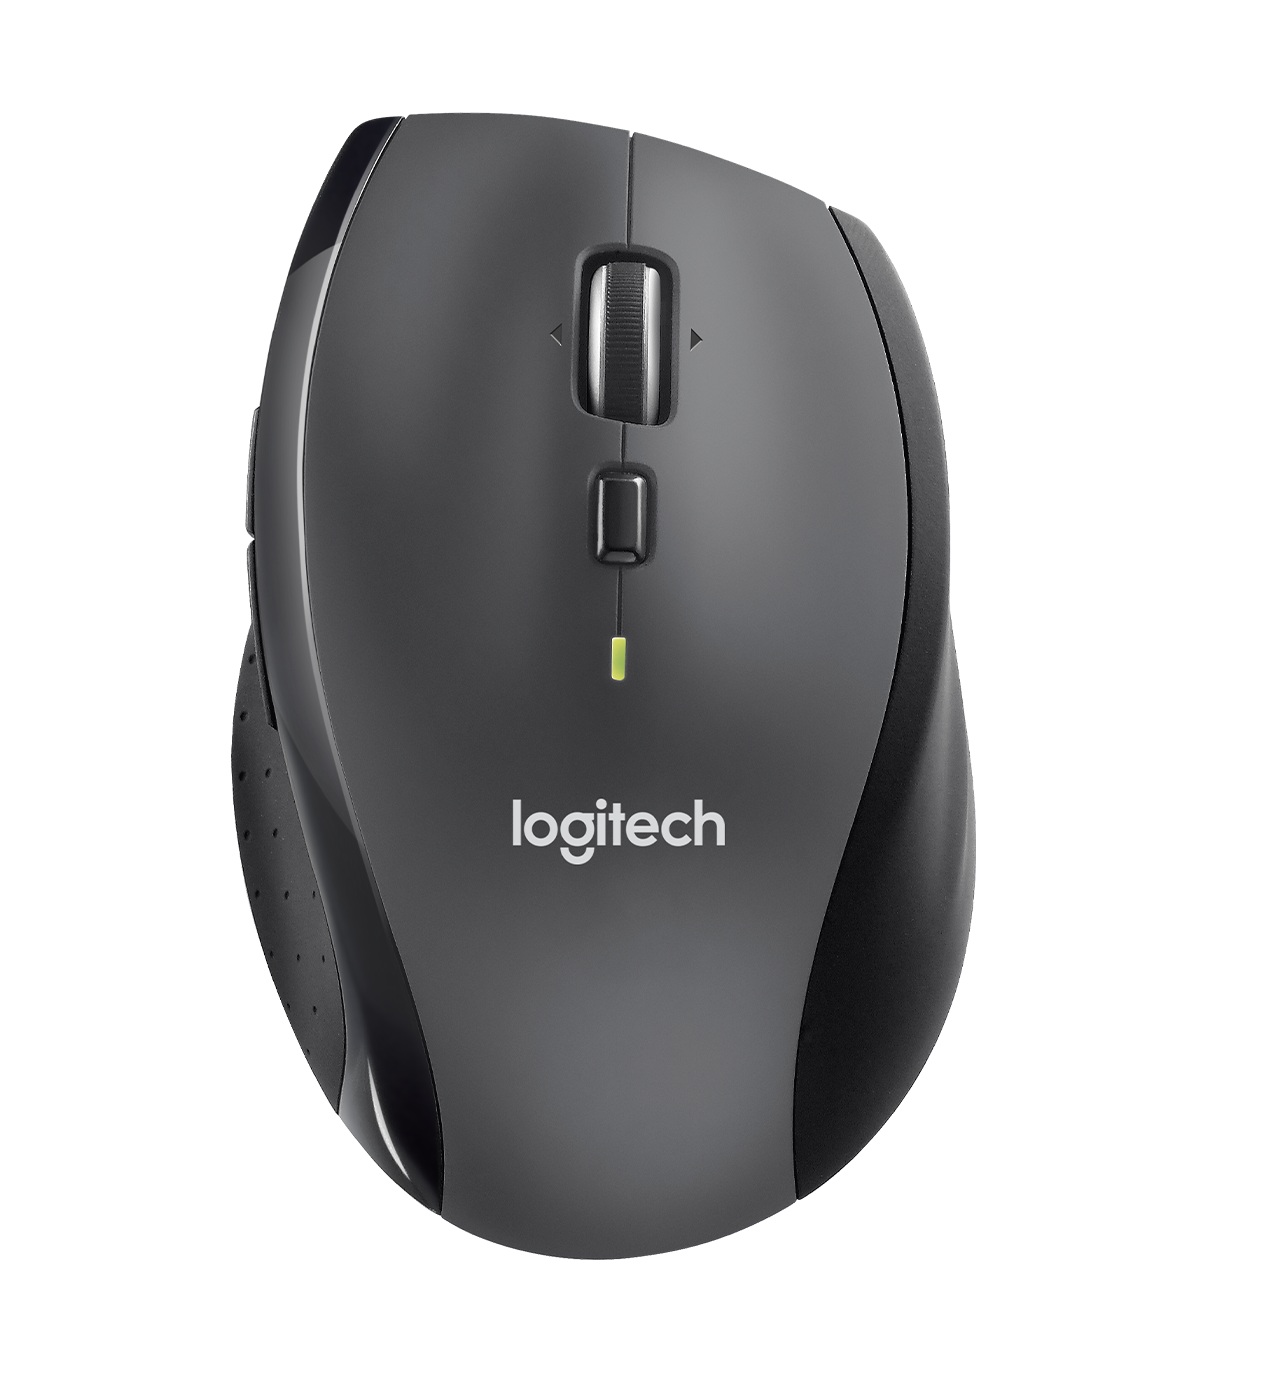 موس لاجیتک Logitech M705 Wireless Mouse